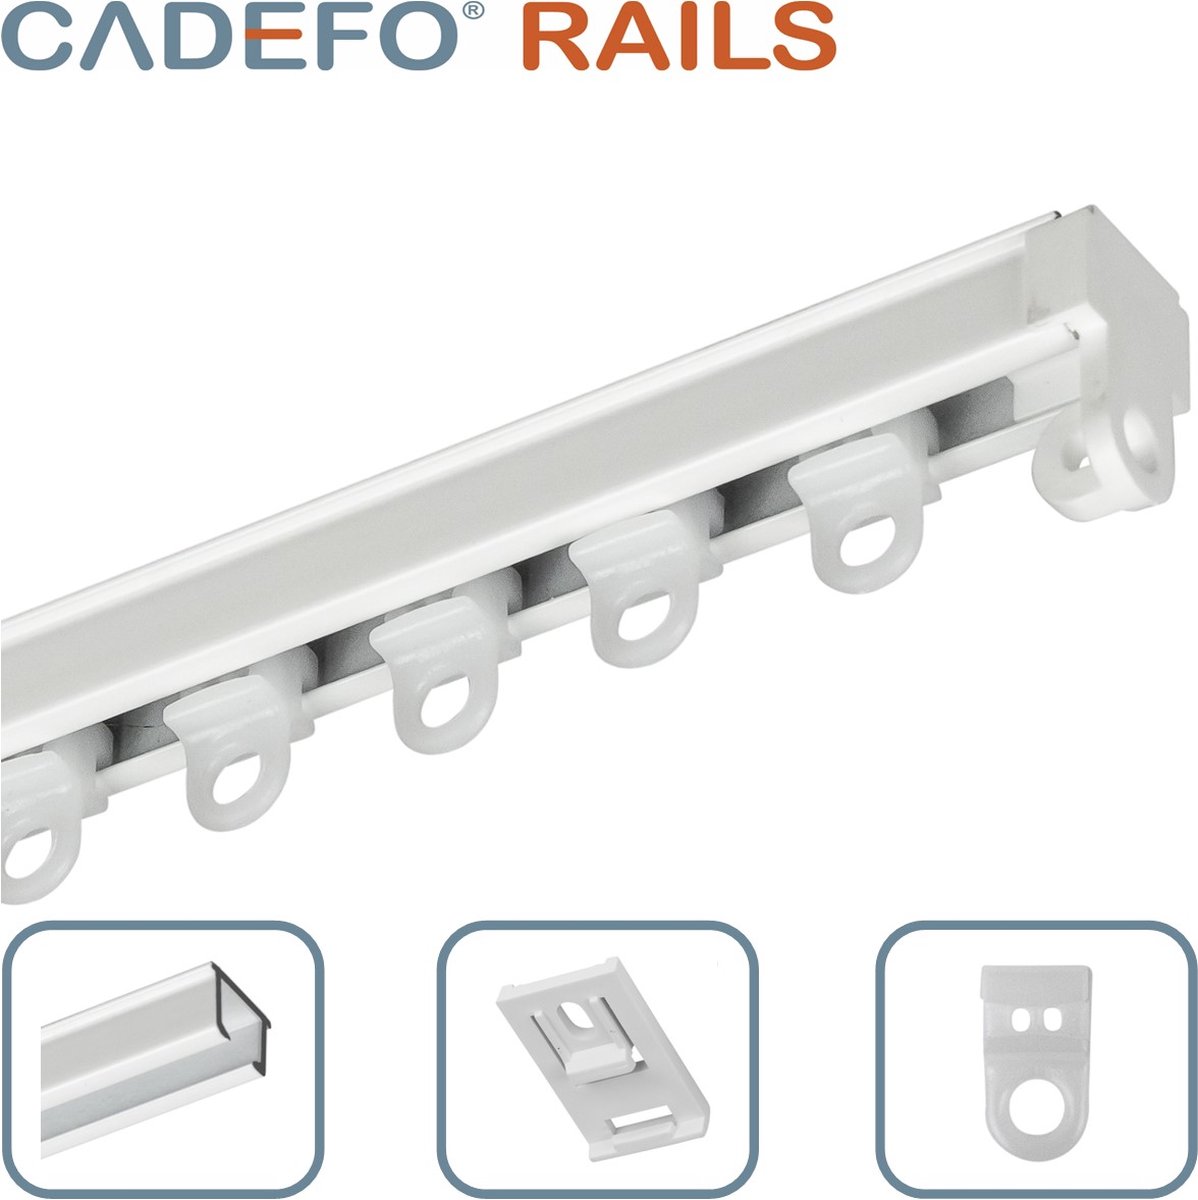 CADEFO RAILS (401 - 450 cm) Gordijnrails - Compleet op maat! - UIT 1 STUK - Leverbaar tot 6 meter - Plafondbevestiging - Lengte 403 cm